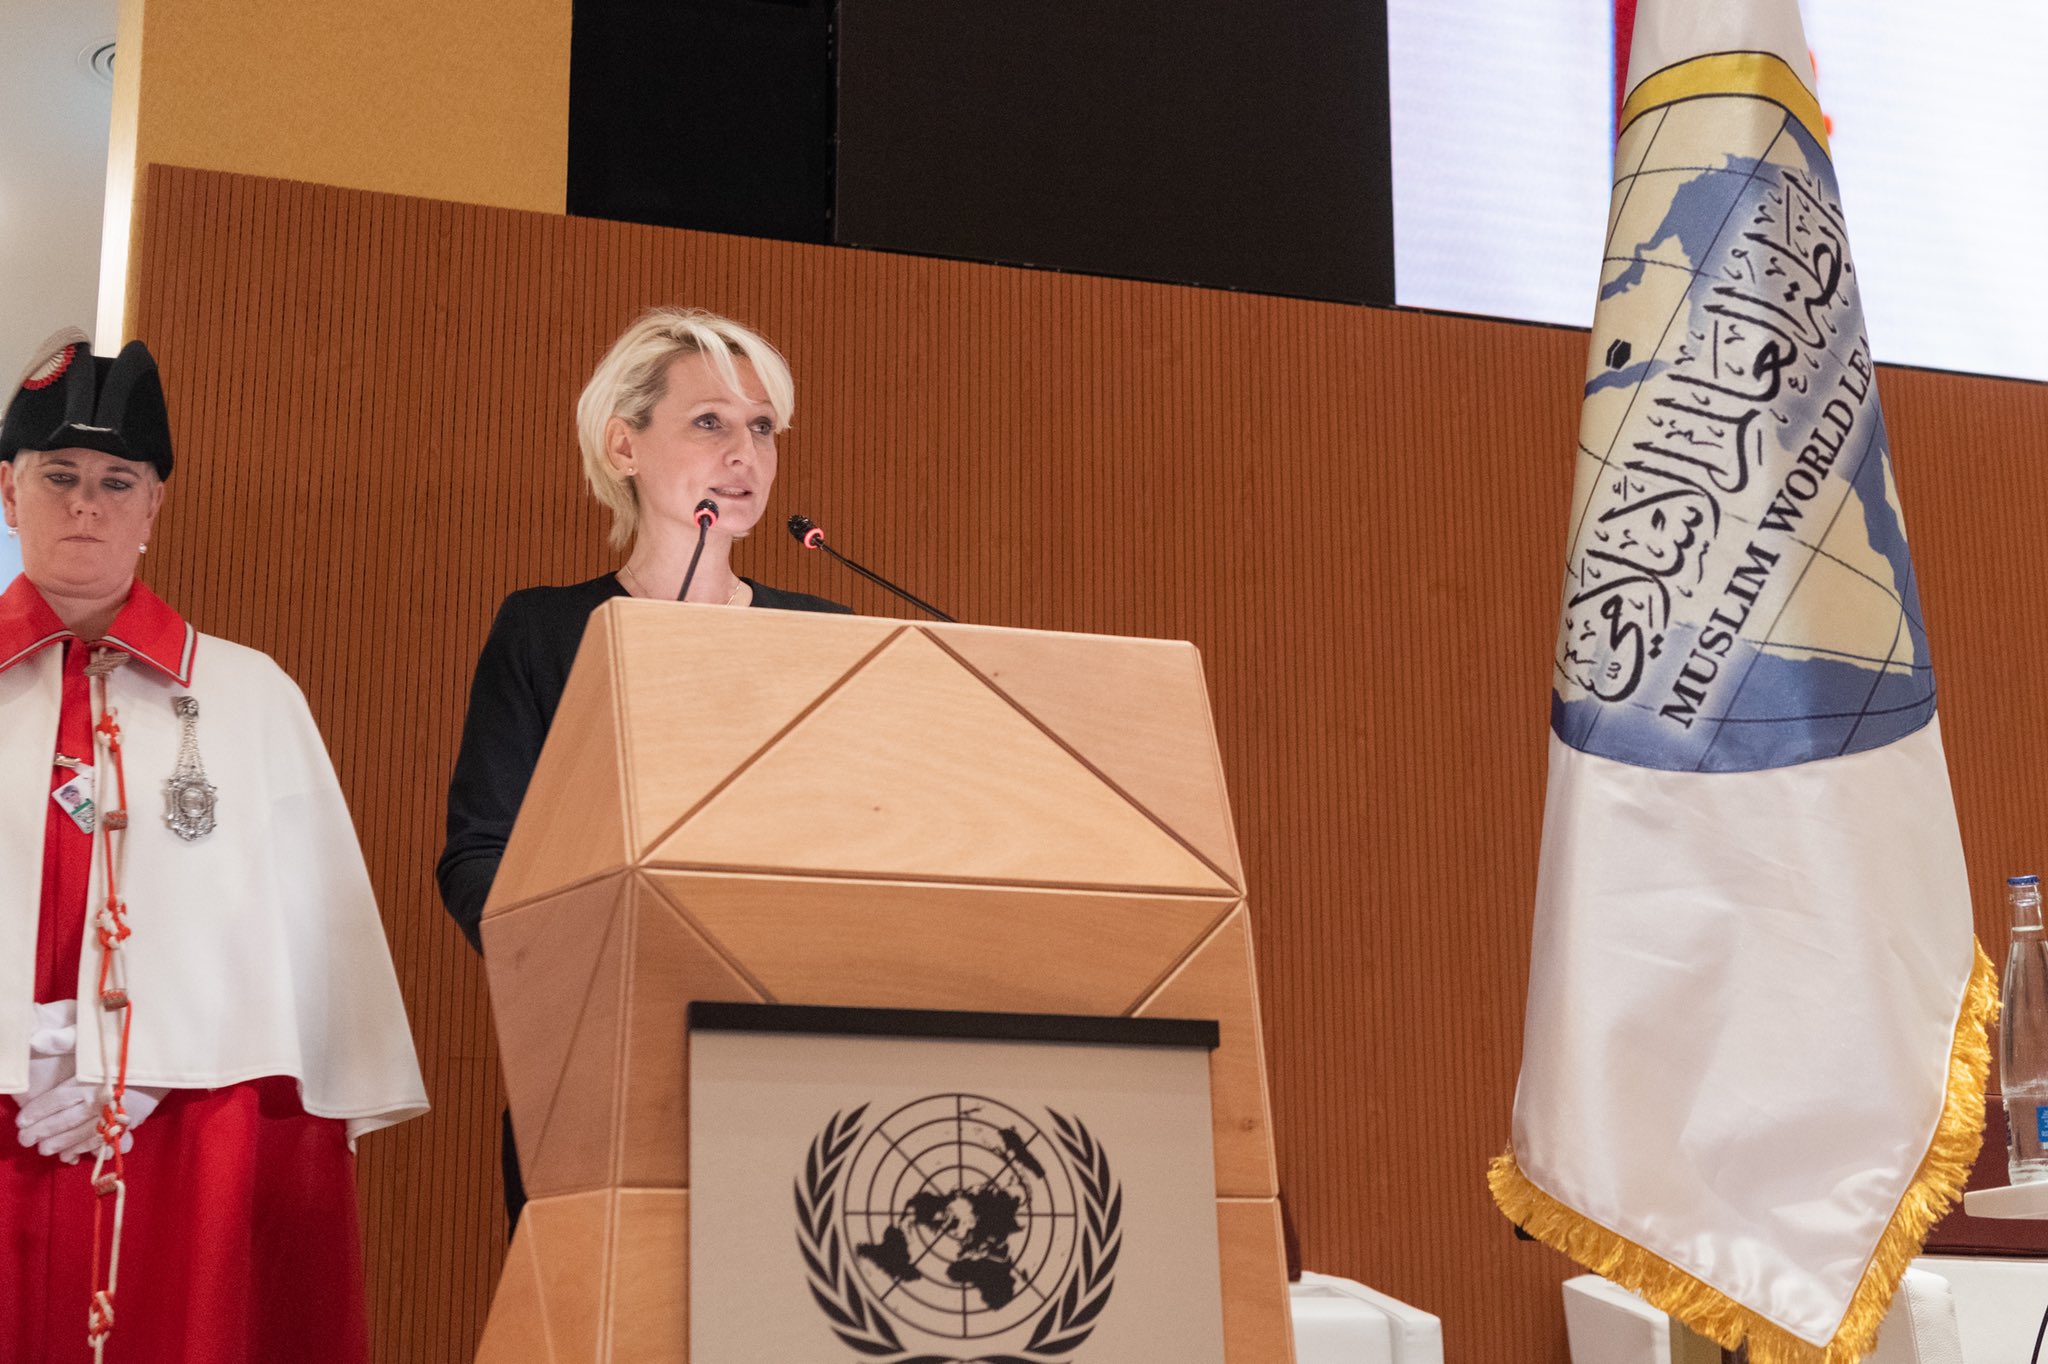 سوئس وفاقی پارلیمنٹ کی صدر، اقوام متحدہ میں ” جنیوا اعلامیہ “کے سیشن میں حصہ لیتے ہوئ